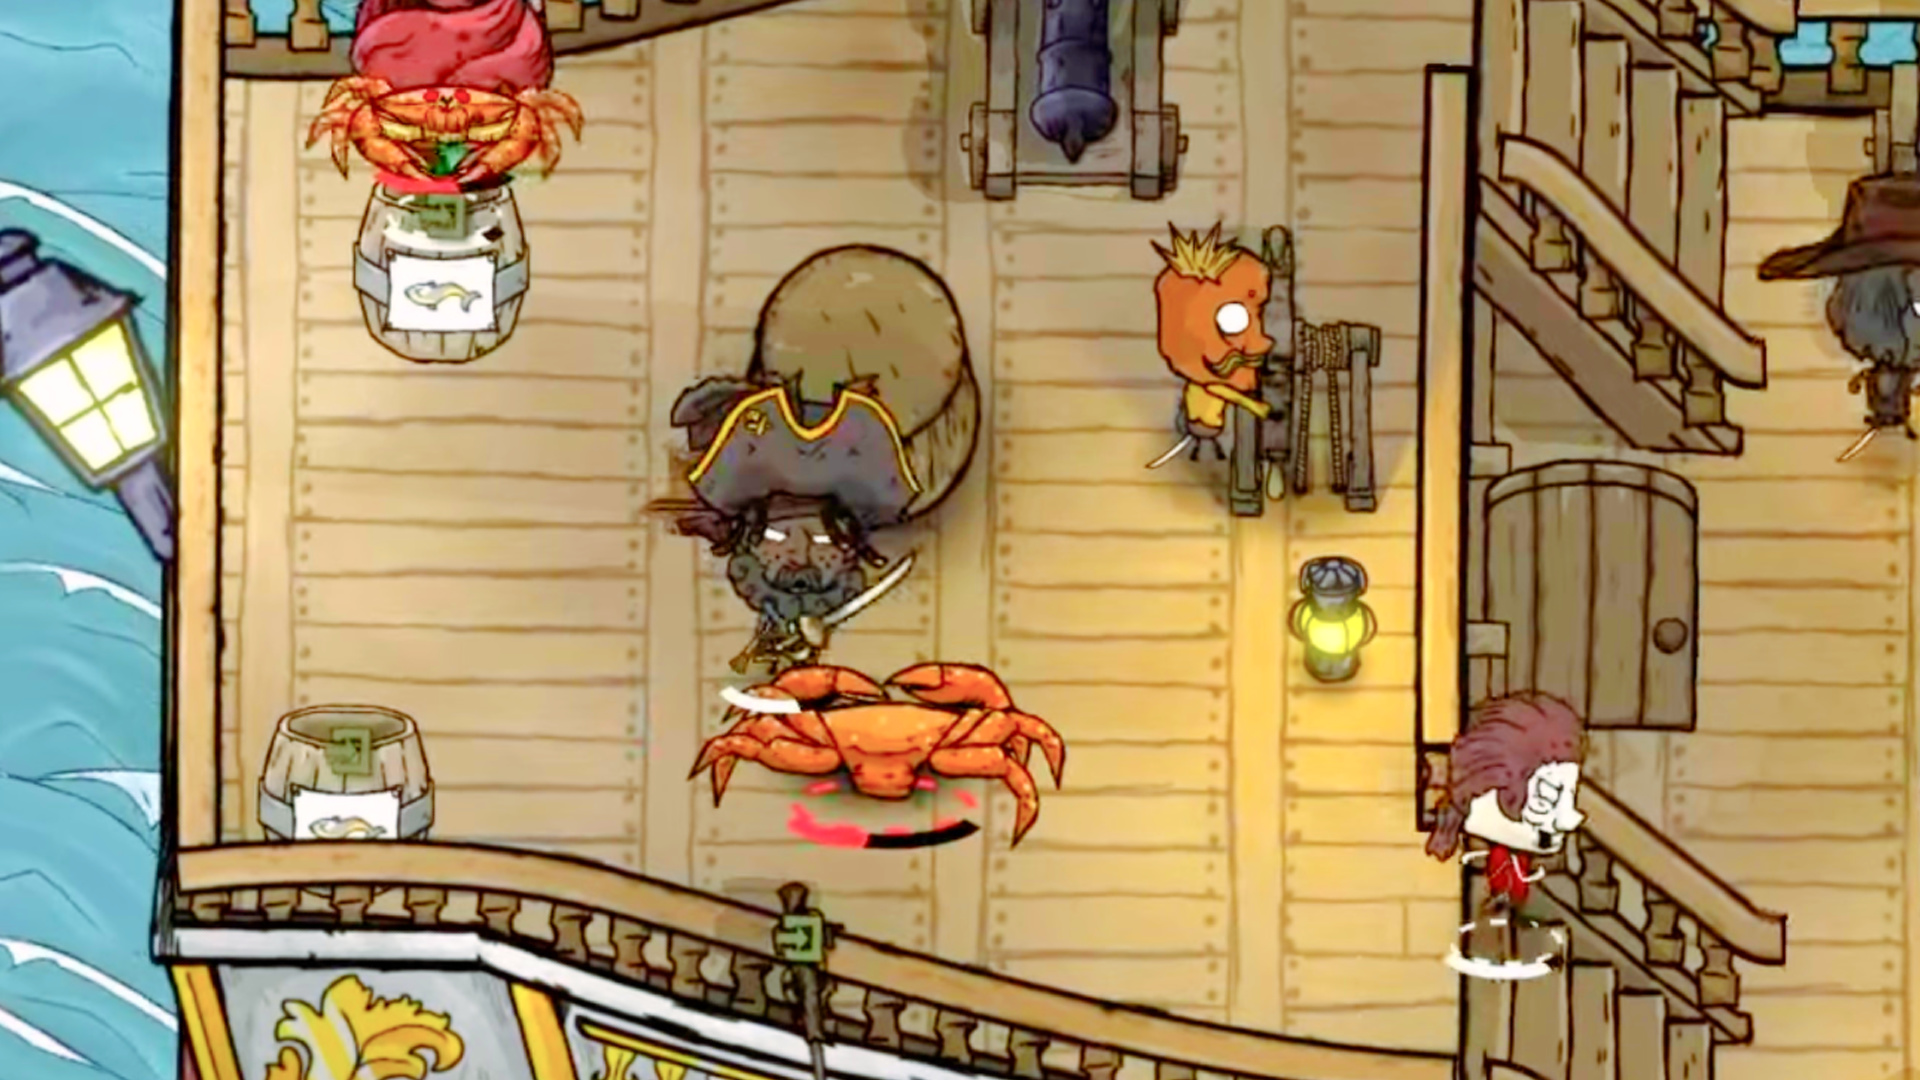 Pirátská hra ve stylu Don't Starve od modderů RimWorld je nyní k dispozici na Steamu